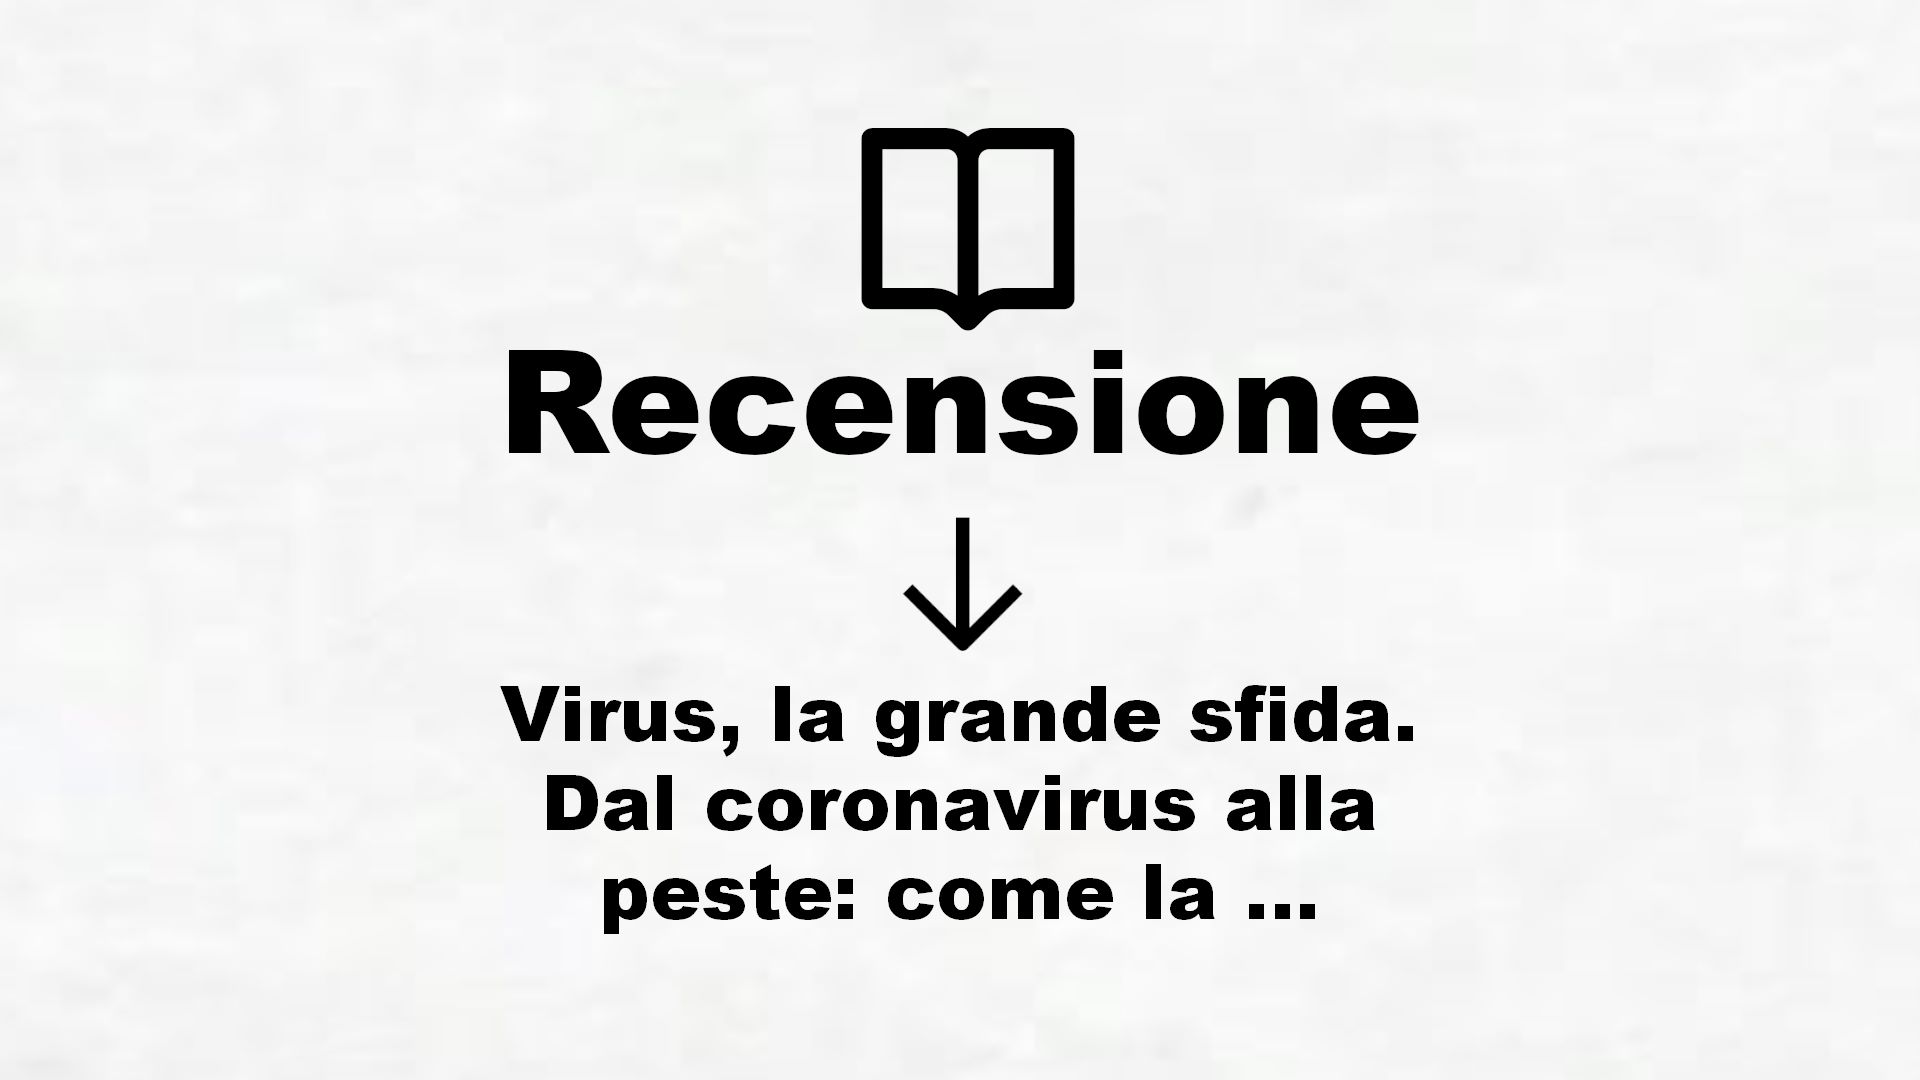 Virus, la grande sfida. Dal coronavirus alla peste: come la scienza può salvare l’umanità – Recensione Libro